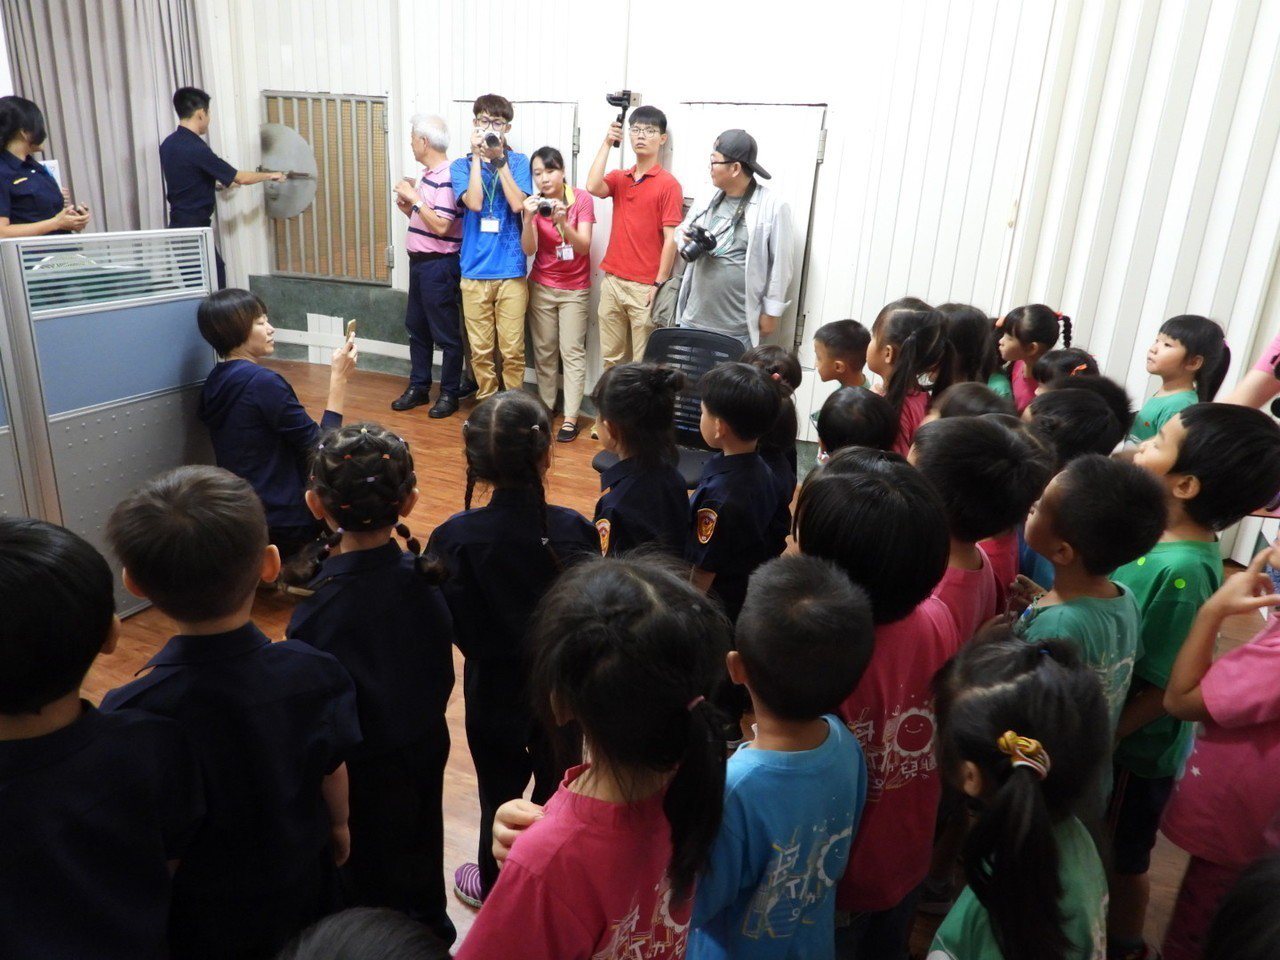 臺南市首創整合婦幼少年保護 成立安全保護中心